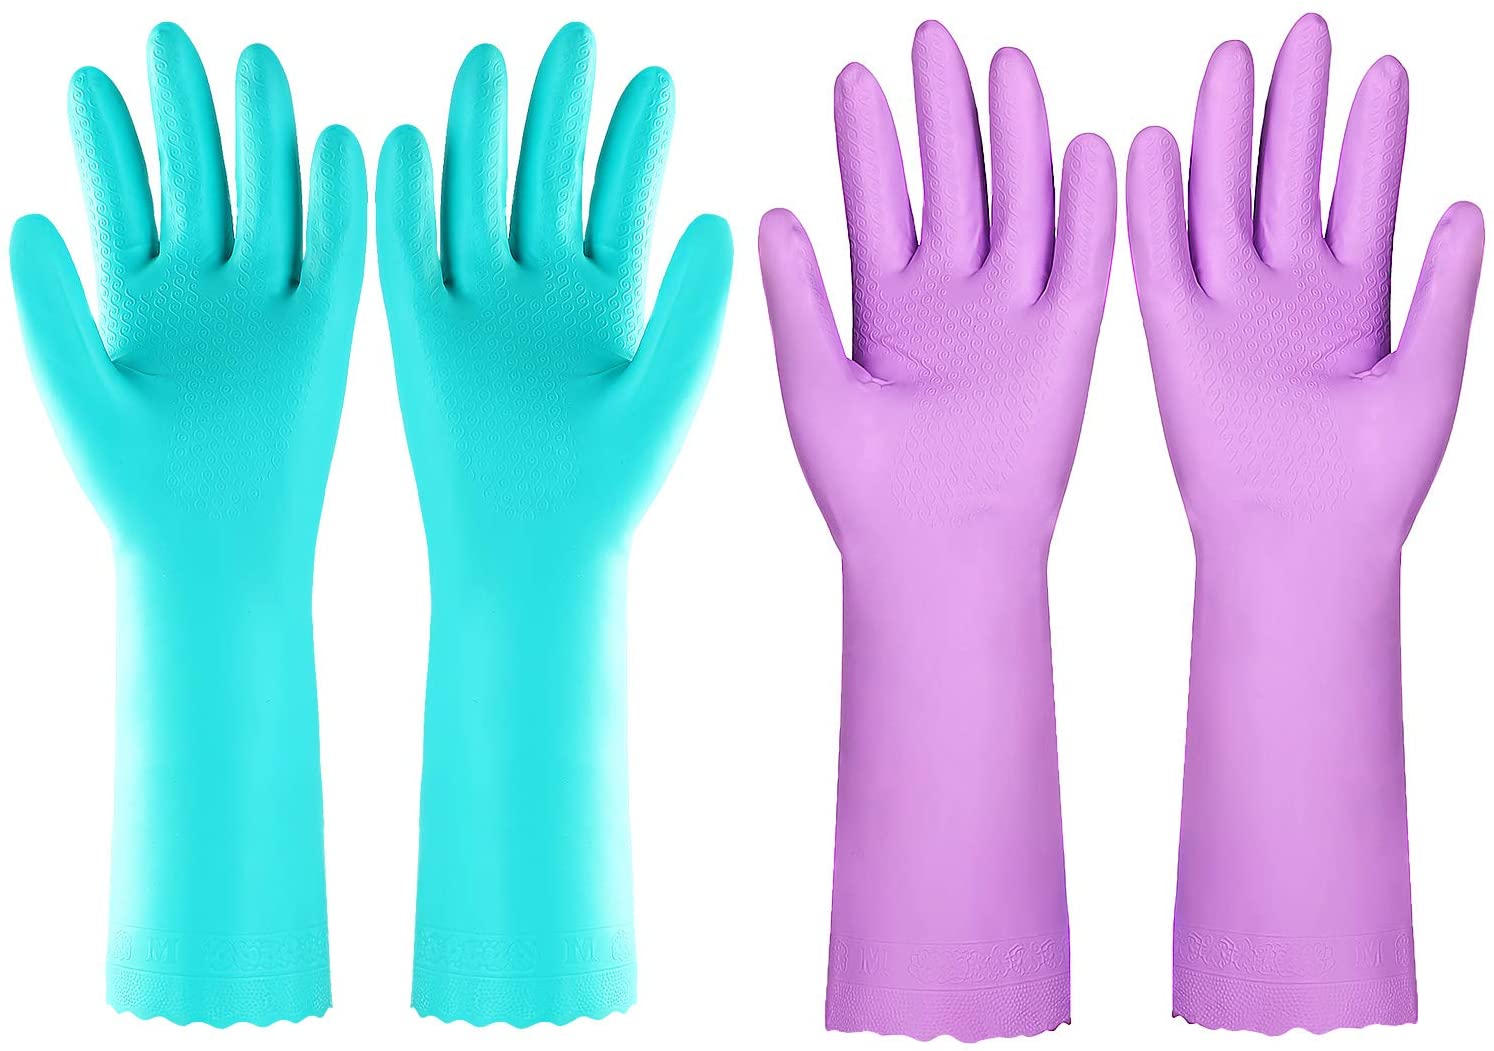 Elgood Large Latex-Free Dishwashing Gloves, 2-Pack